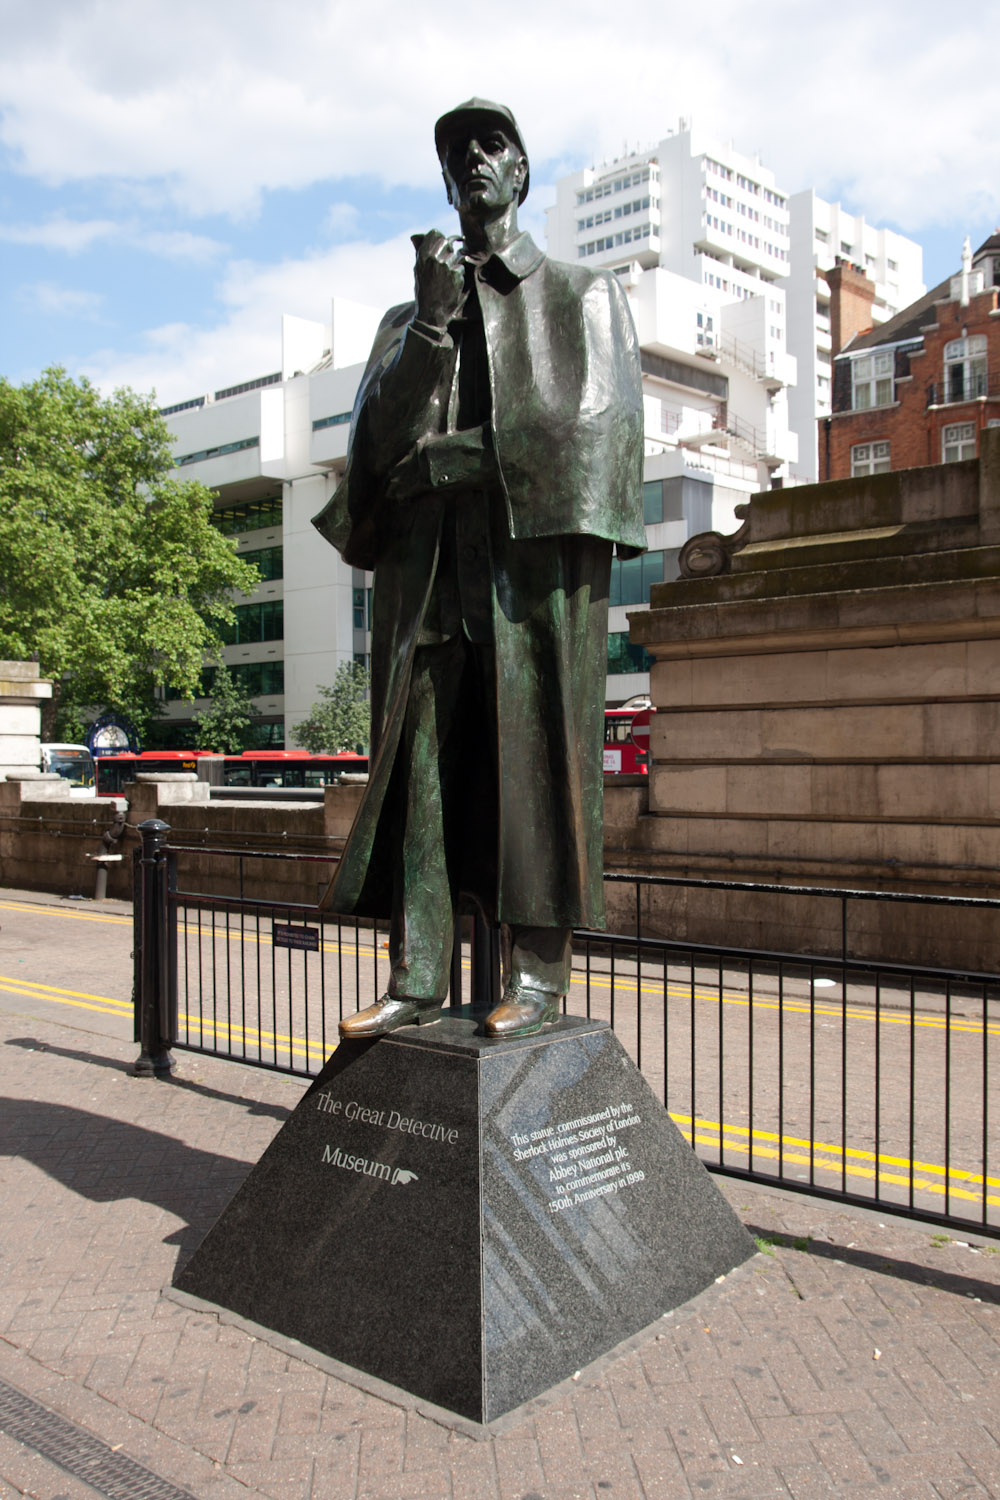 Tượng đài của Sherlock Holmes được dựng lên để tưởng nhớ Conan Doyle